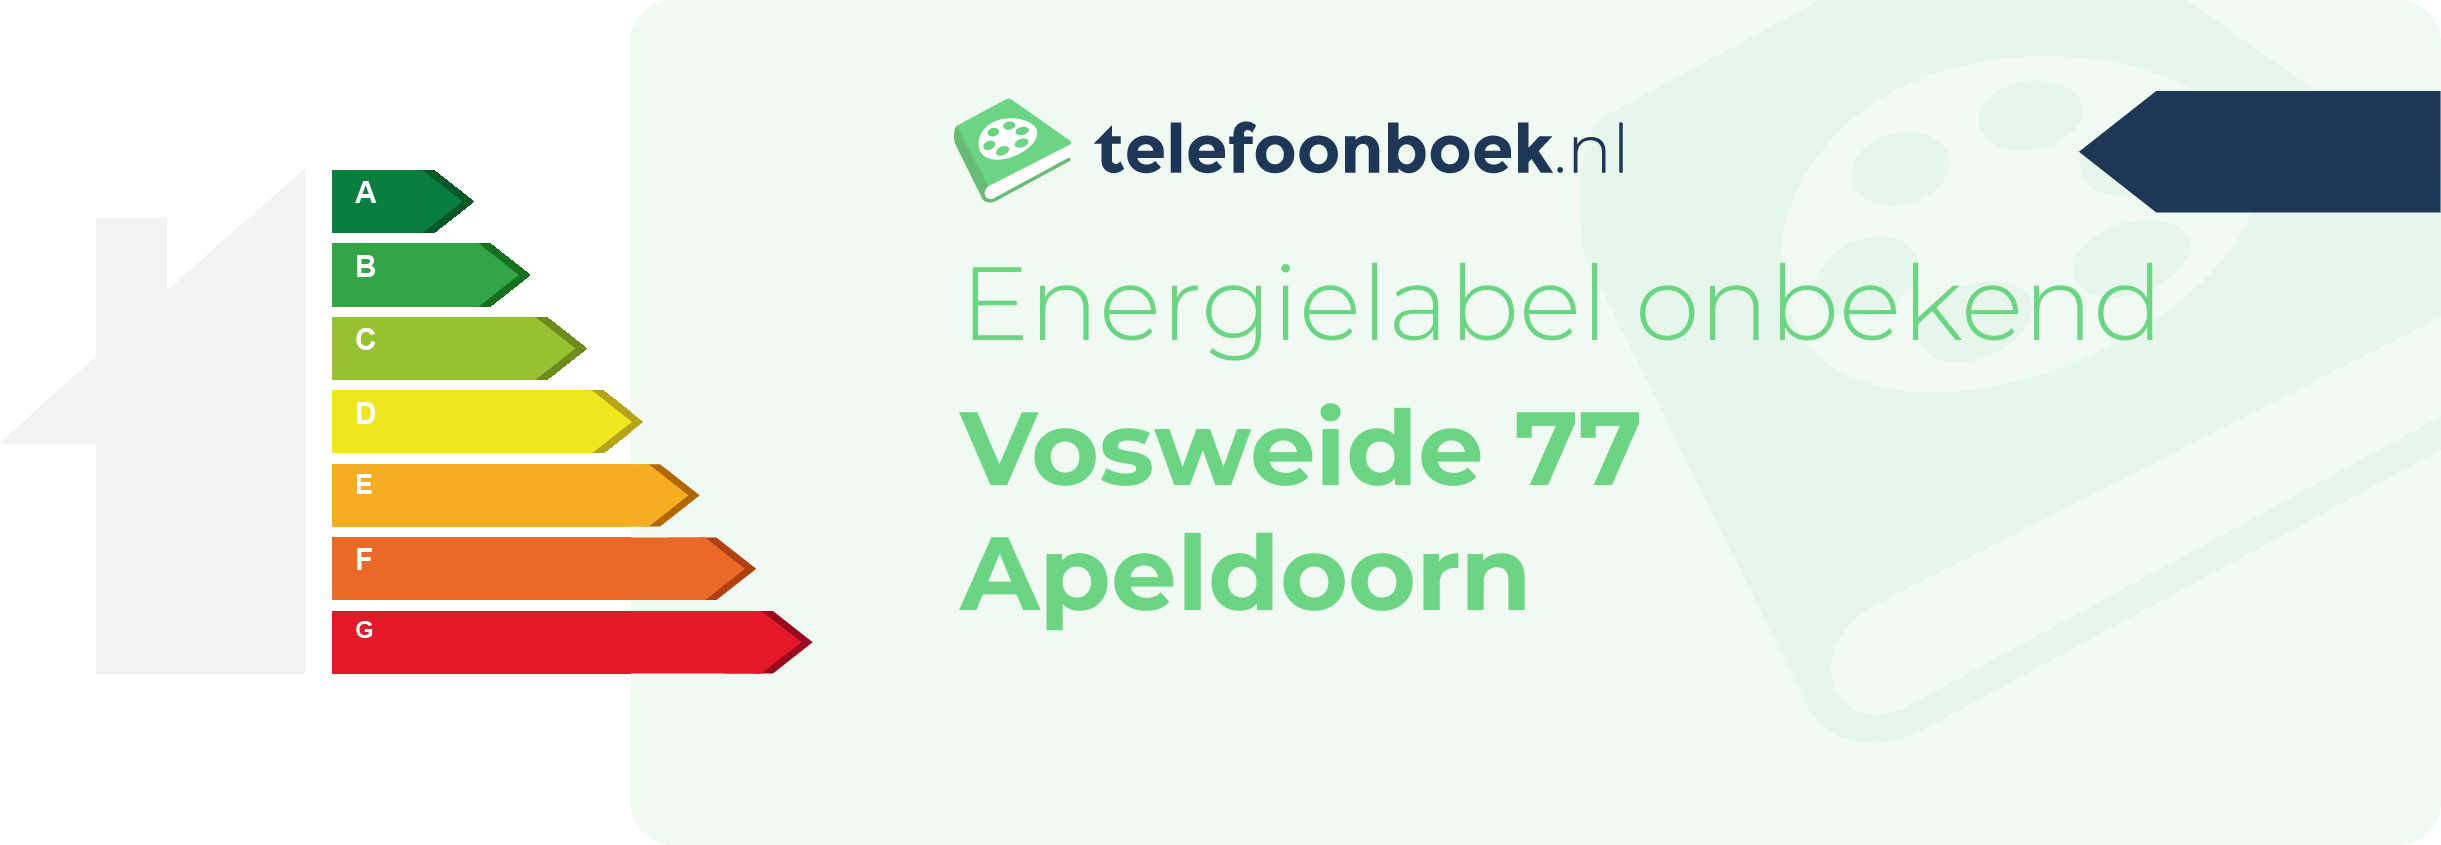 Energielabel Vosweide 77 Apeldoorn